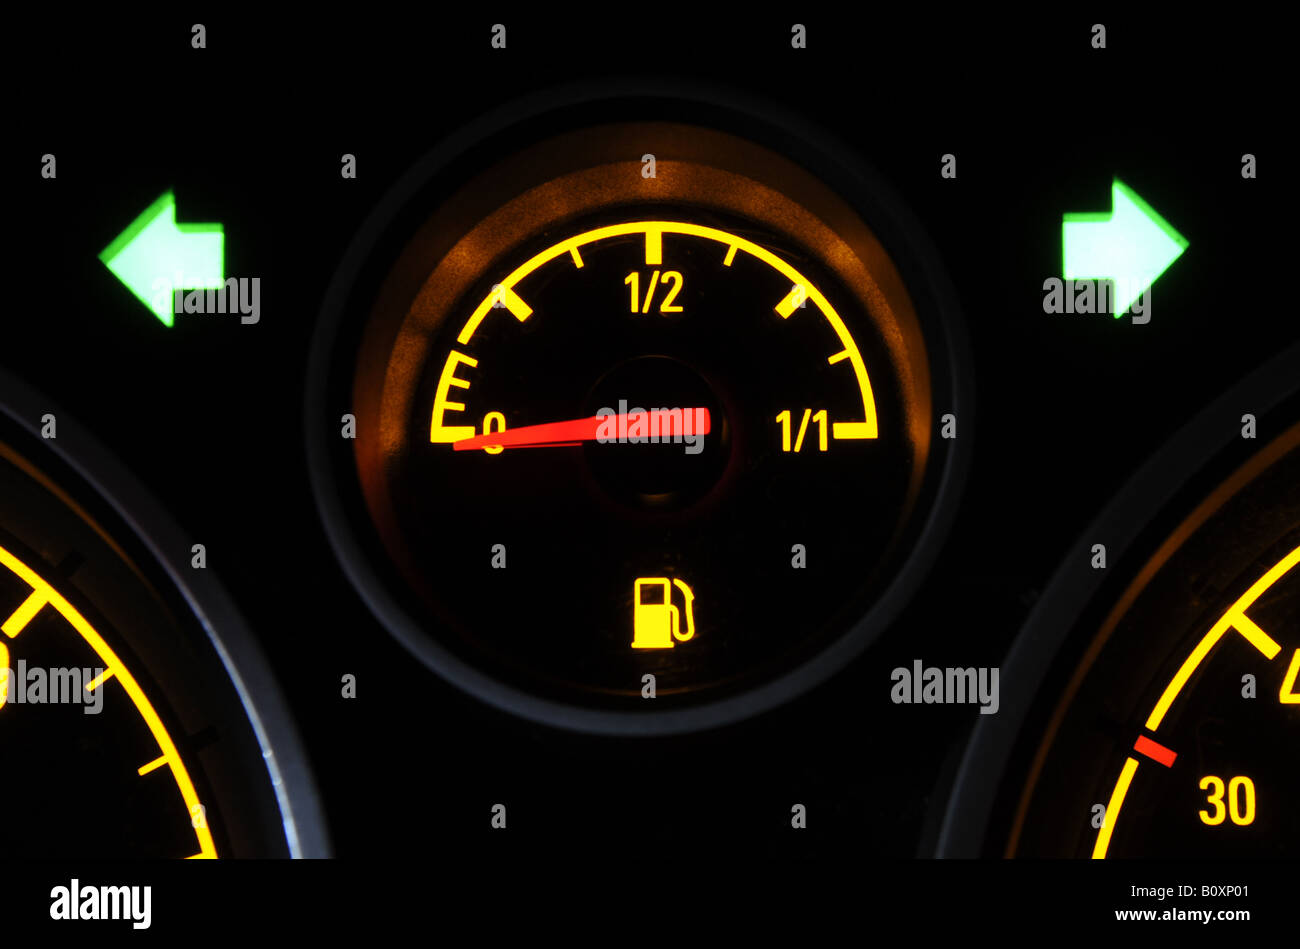 https://c8.alamy.com/compde/b0xp01/eine-britische-auto-tankanzeige-zeigt-niedrigen-kraftstoffverbrauch-mit-kraftstoff-warnleuchte-und-hazard-blinker-uk-b0xp01.jpg